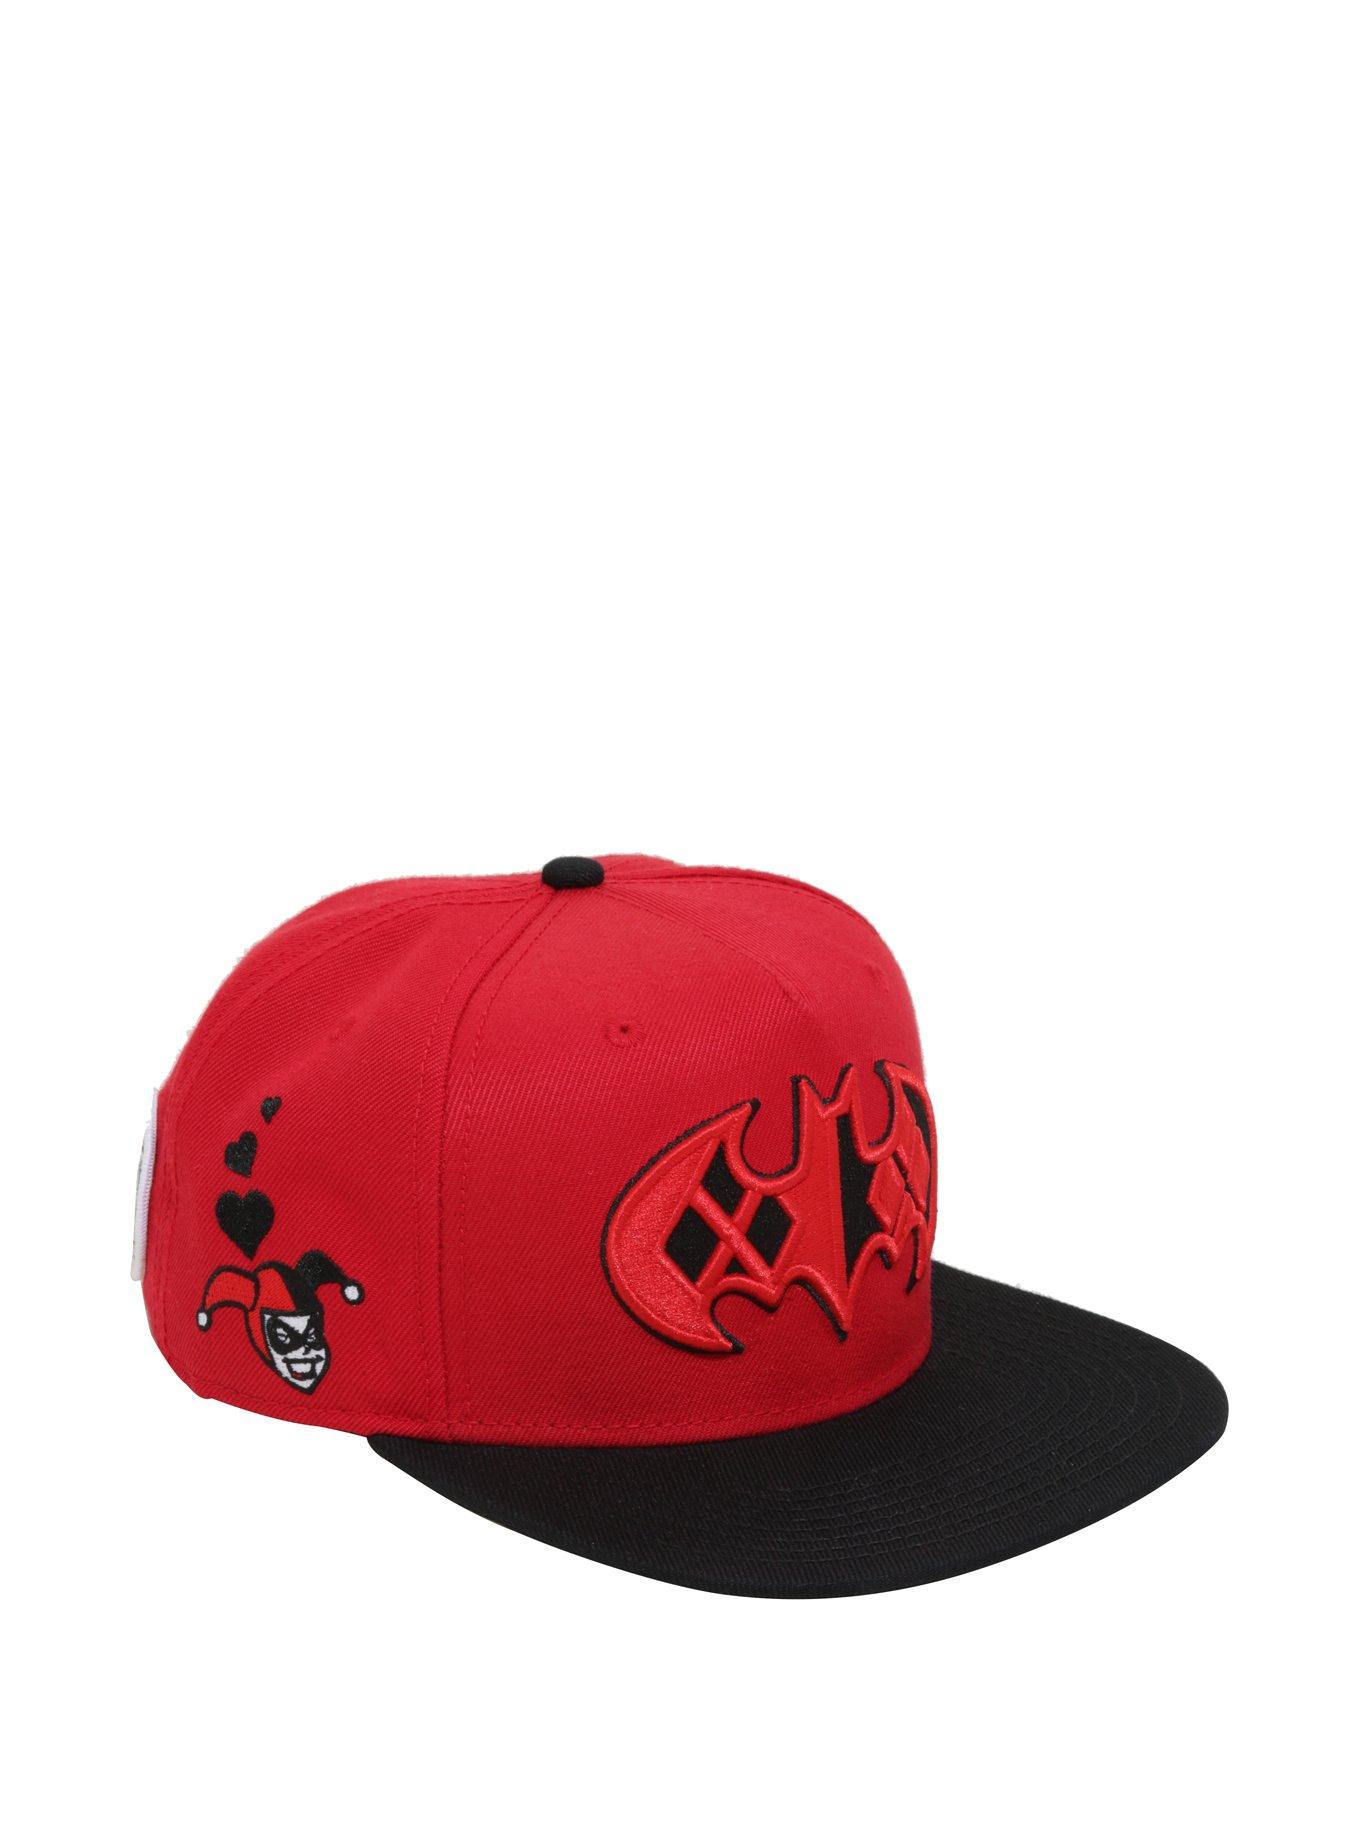 DC Comics Harley Quinn Batman Logo Red Snapback Hat, , hi-res